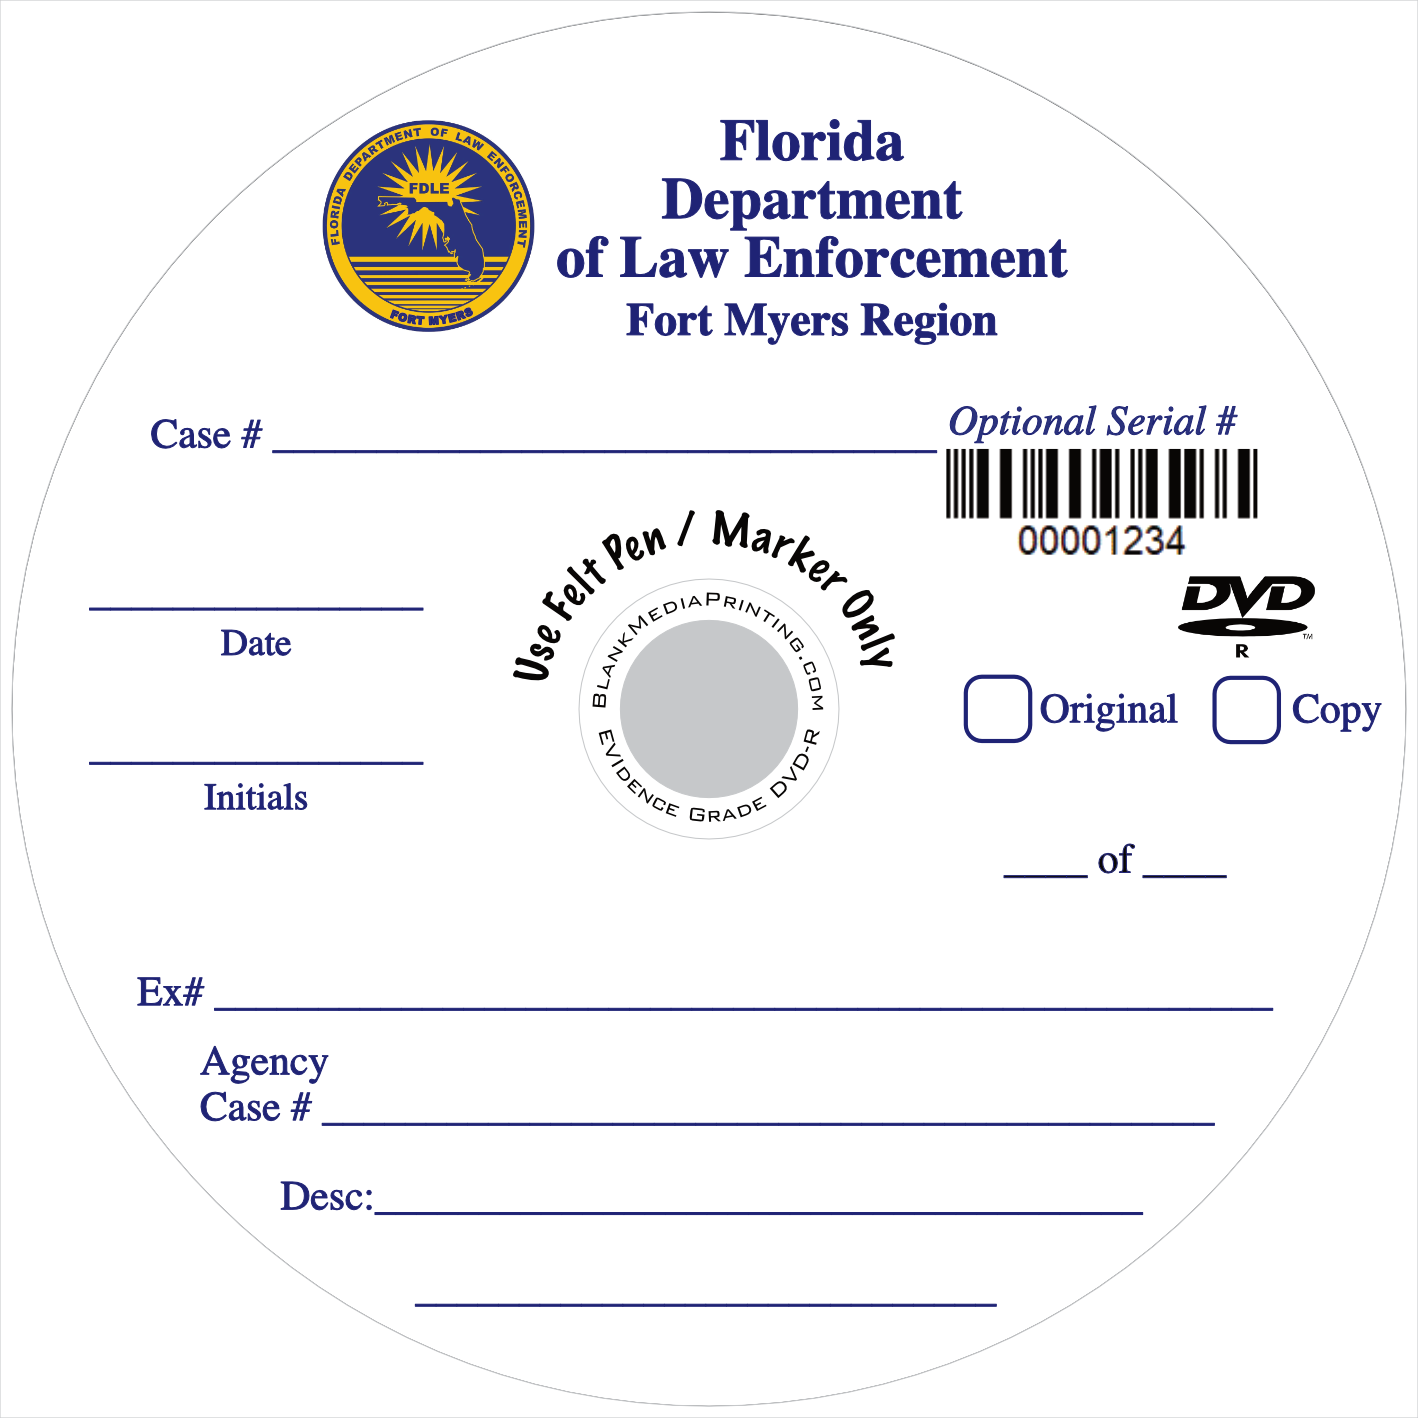 Florida Department of Law Enforcement